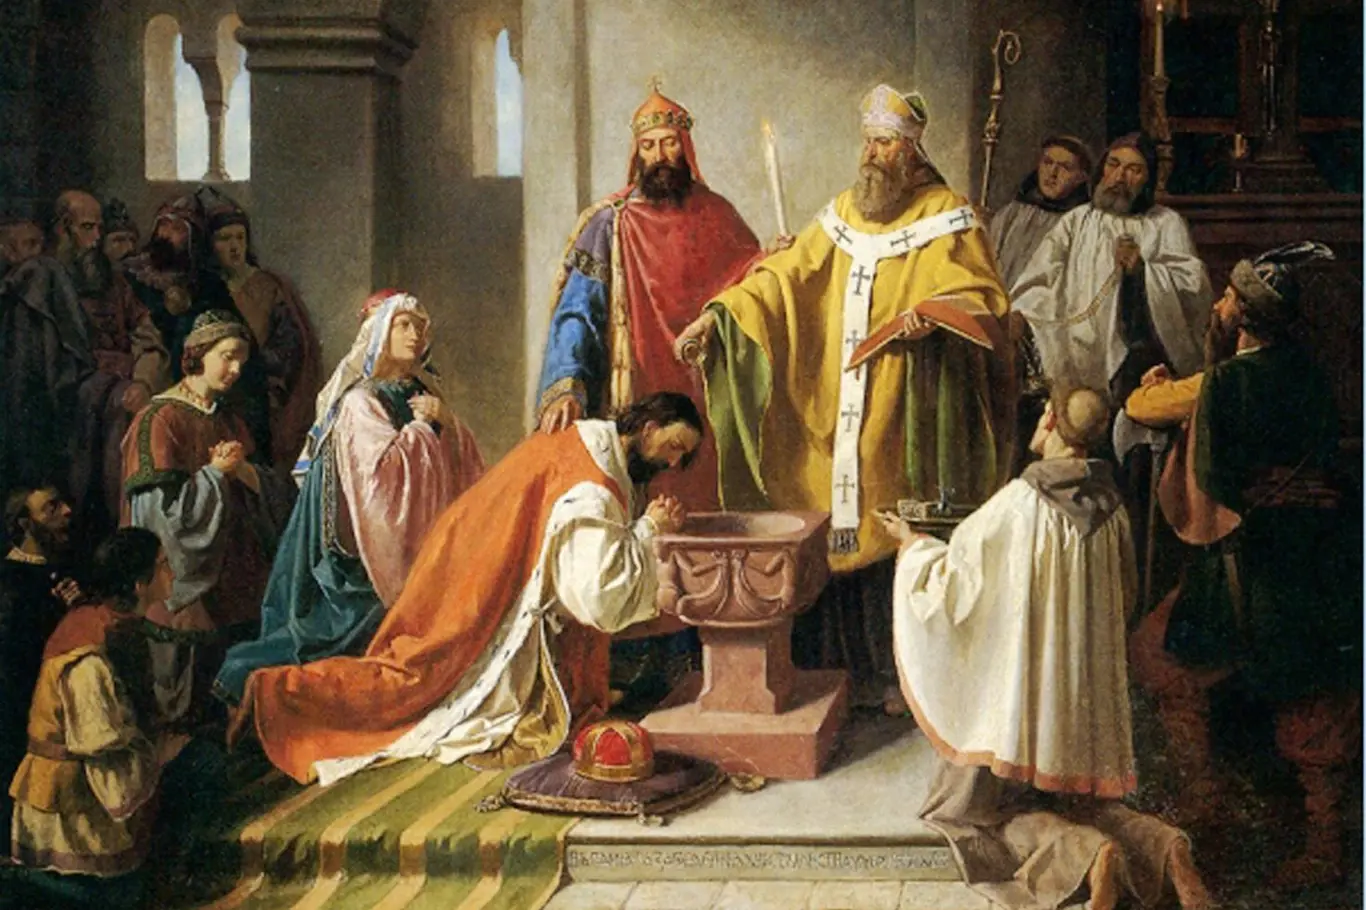 Podle Kristiánovy legendy byl Bořivoj I. pokřtěn moravským biskupem sv. Metodějem, který spolu s bratrem Konstantinem přišel na Velkou Moravu šířit křesťanskou víru.